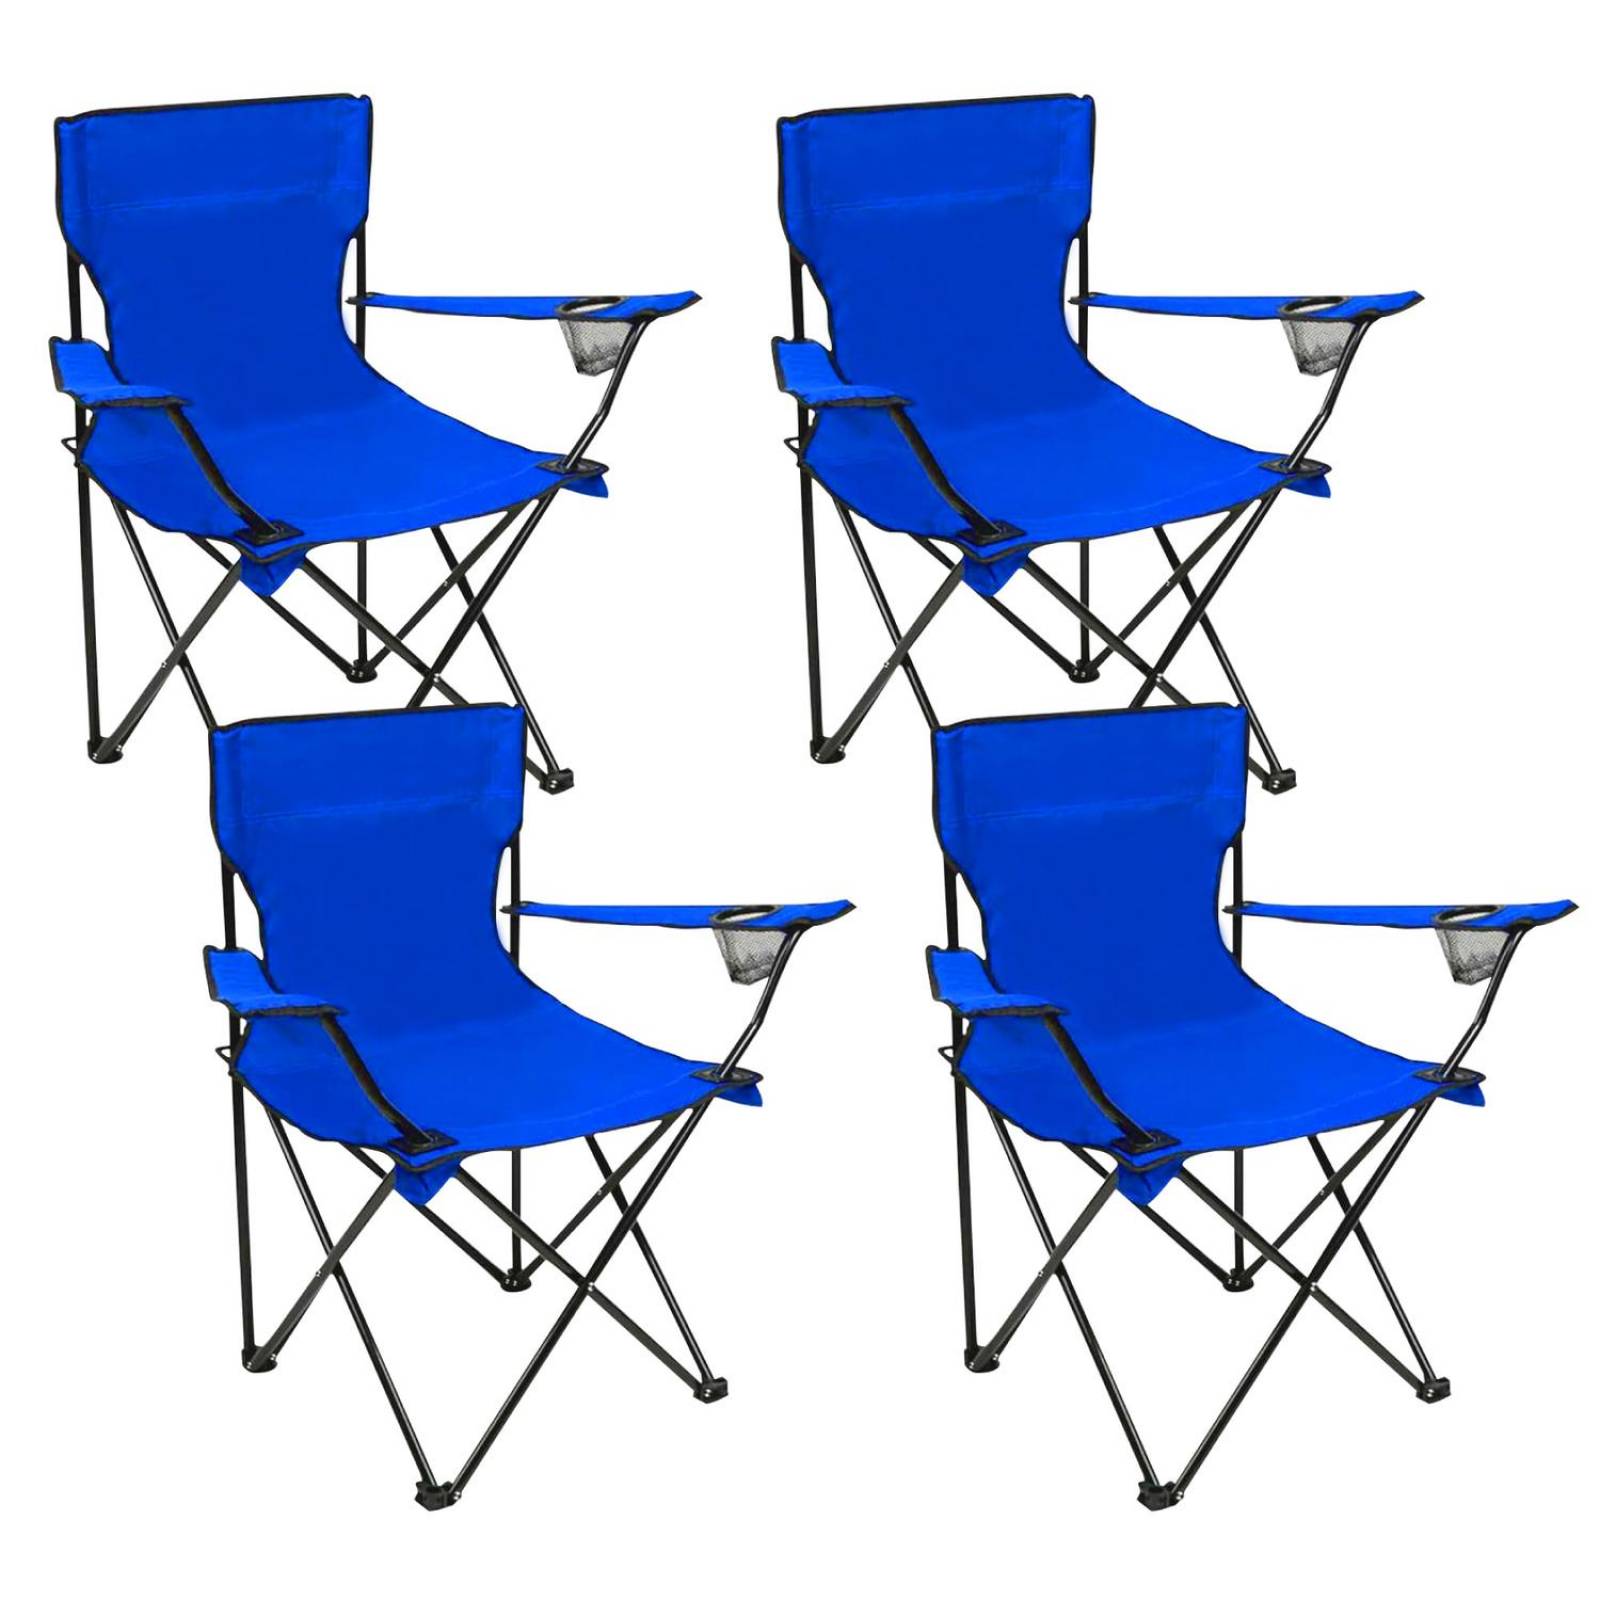 Trademark Innovations Esterilla plegable portátil para silla de playa